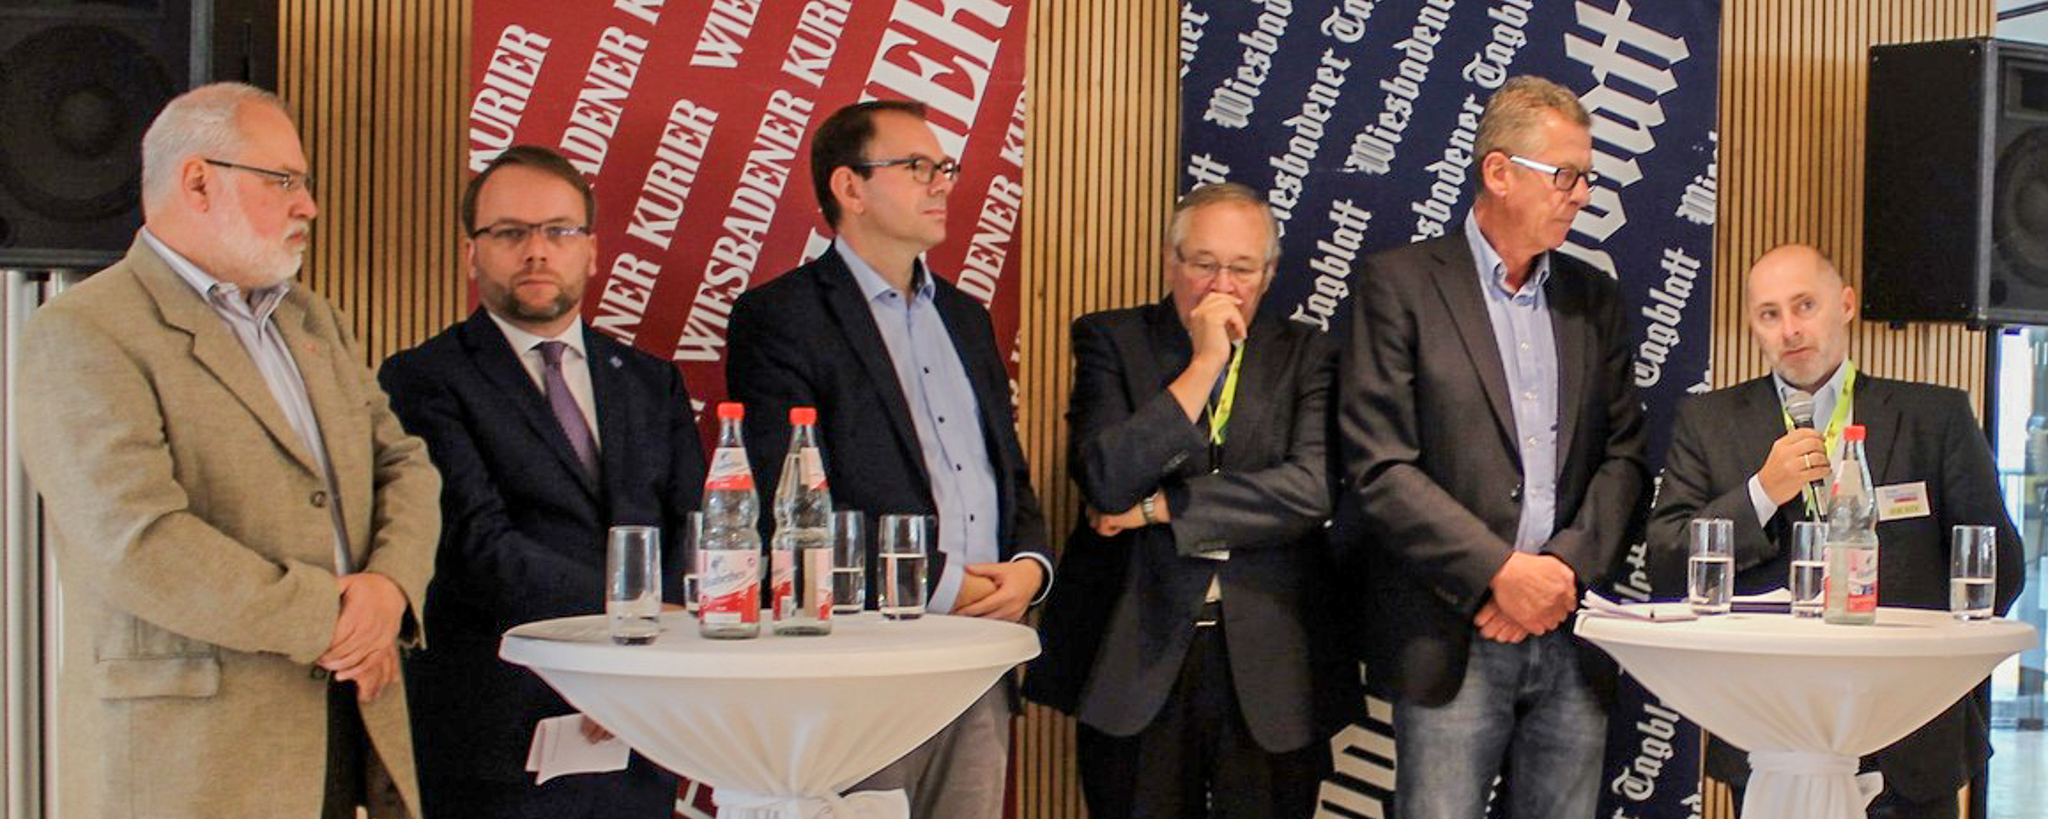 FDP-Landtagsabgeordneter und Parlamentarischer Geschäftsführer der FDP-Fraktion, René Rock (ganz rechts), auf dem Tag der offenen Tür des Hessischen Landtags in Wiesbaden